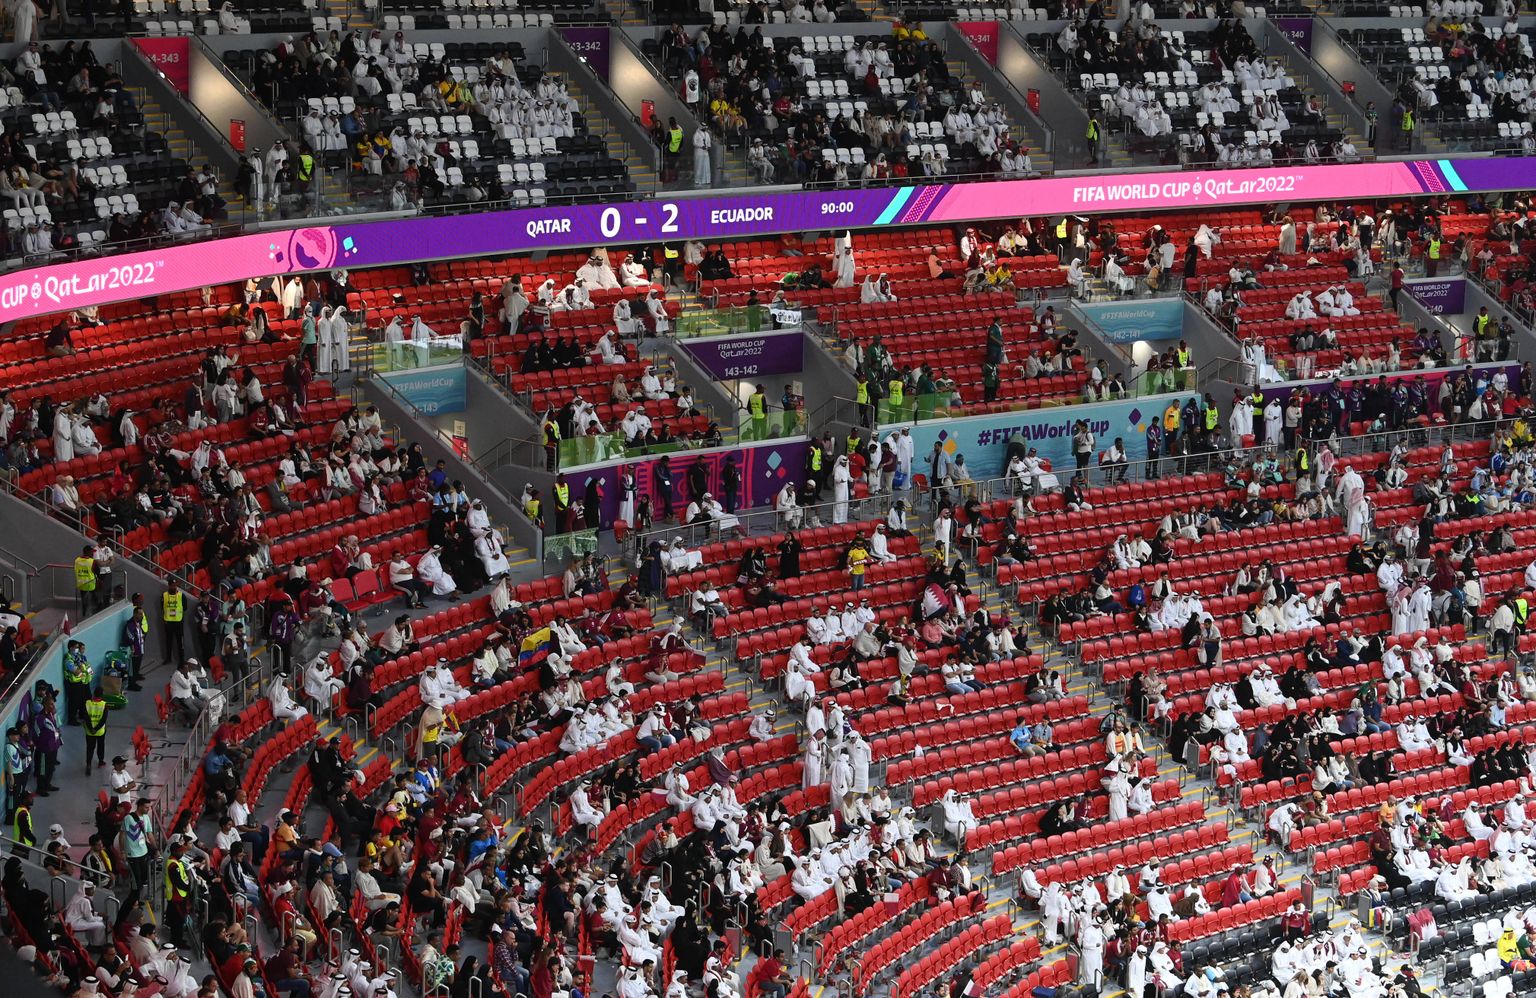 Публика на стадионе "Аль-Байт" во время матча Катар - Эквадор.